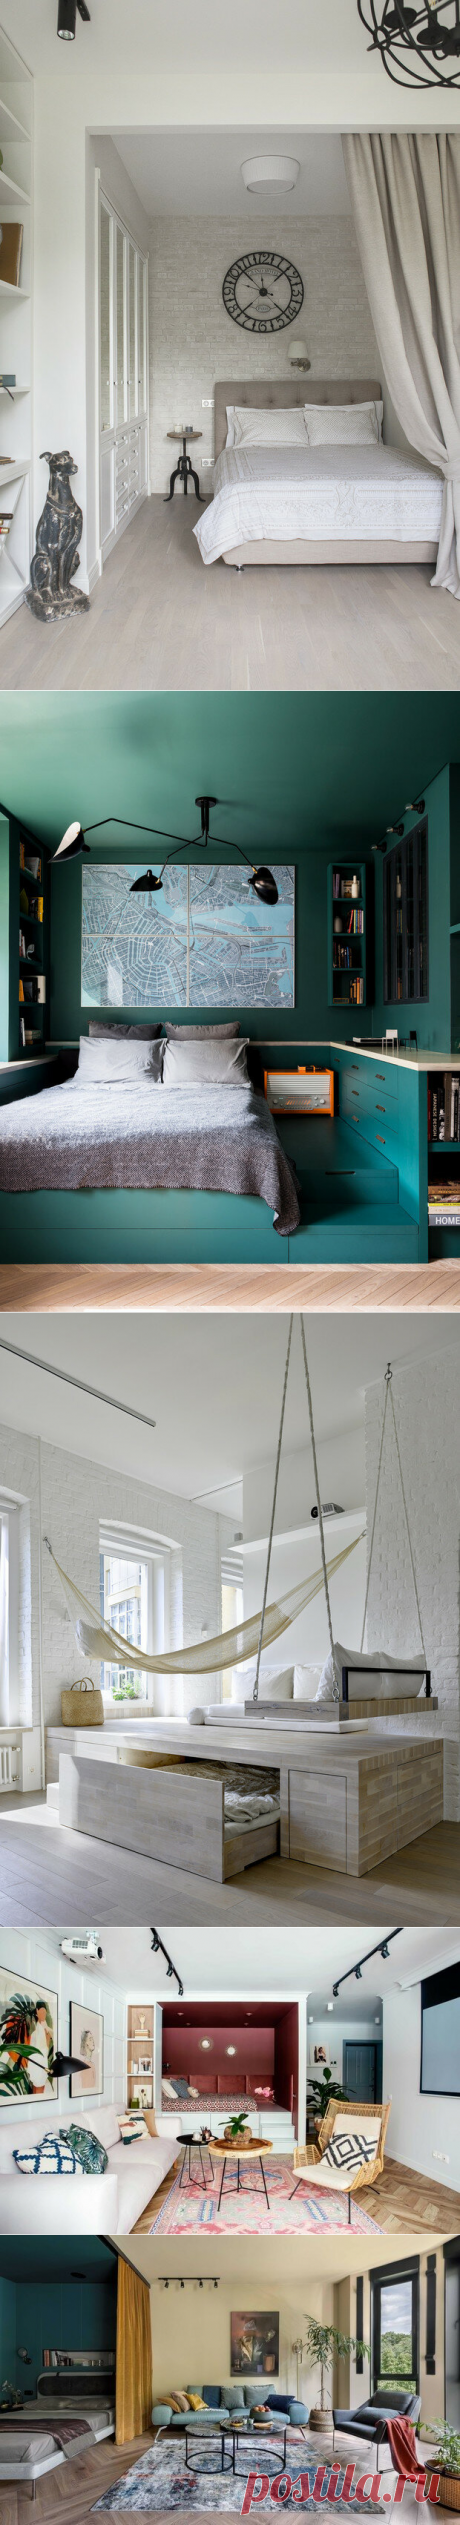 Спальня в маленькой квартире: 5 практичных решений | ELLE Decoration | Яндекс Дзен